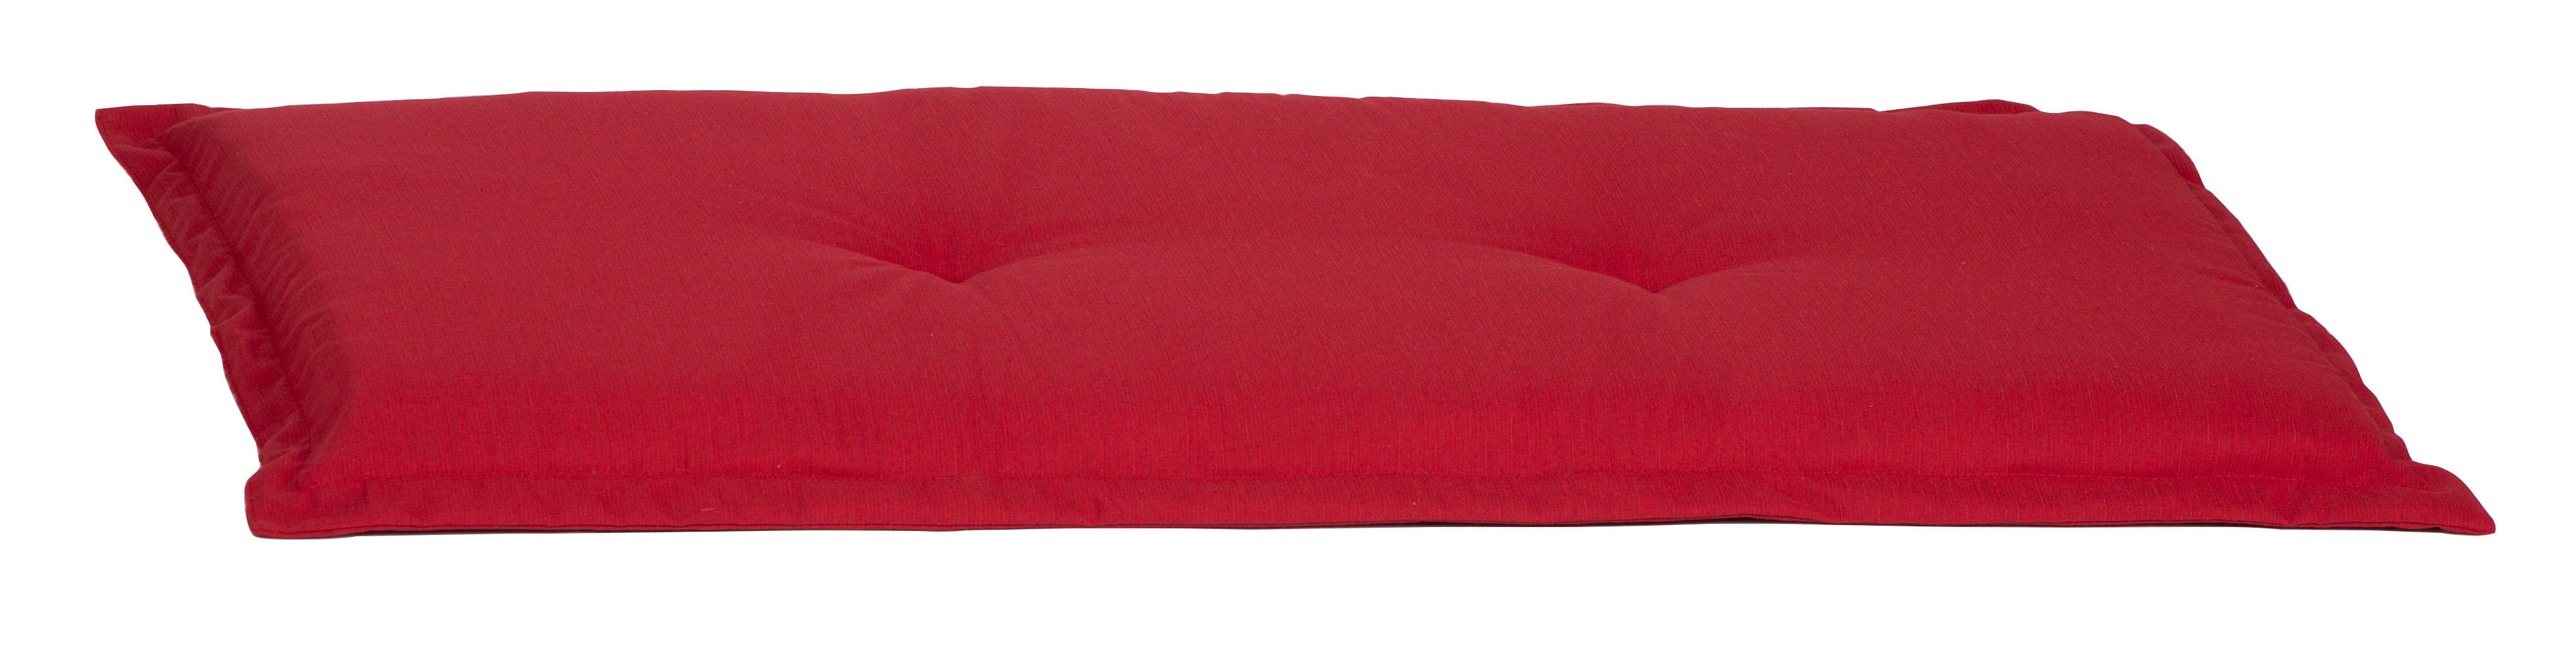 BANKAUFLAGE  meliert  - Rot, Basics, Textil (120/45/7cm)